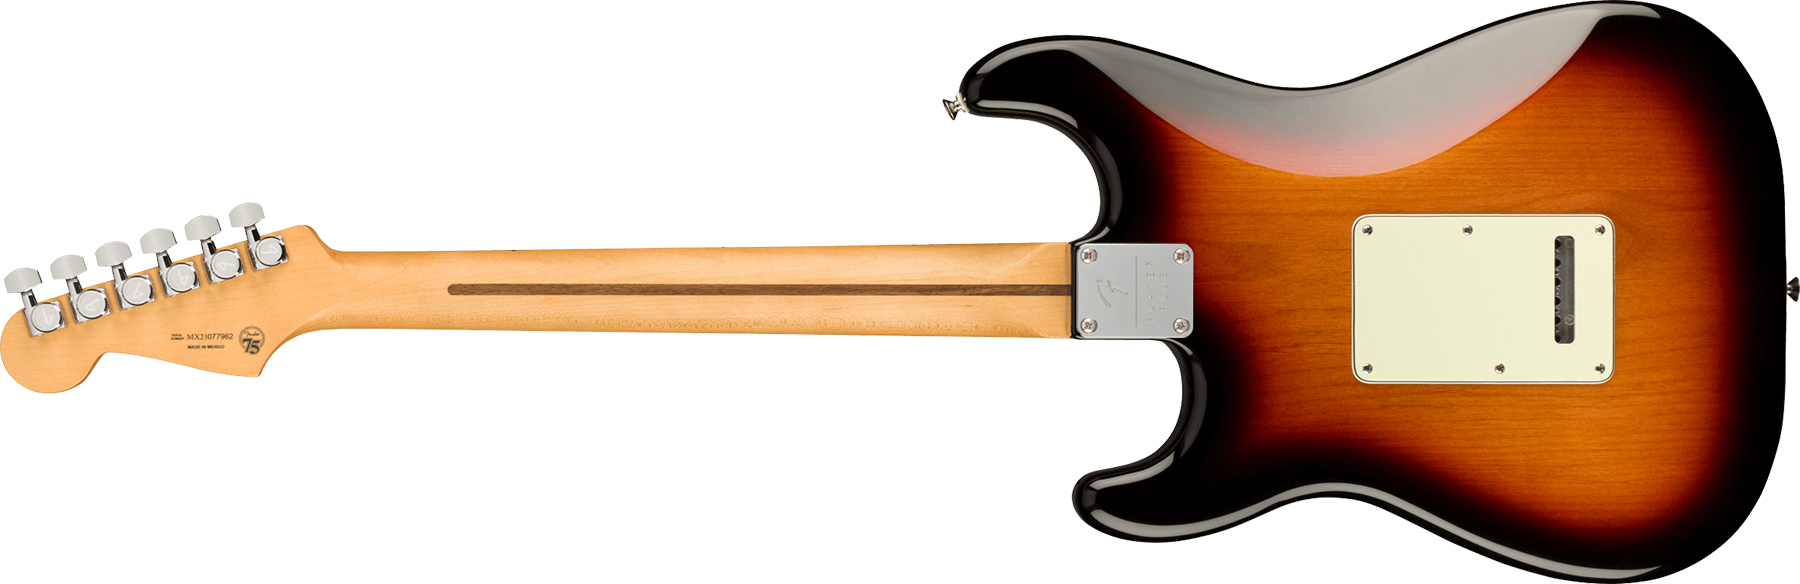 Fender Strat Player Plus Mex Hss Trem Mn - 3-color Sunburst - E-Gitarre in Str-Form - Variation 1